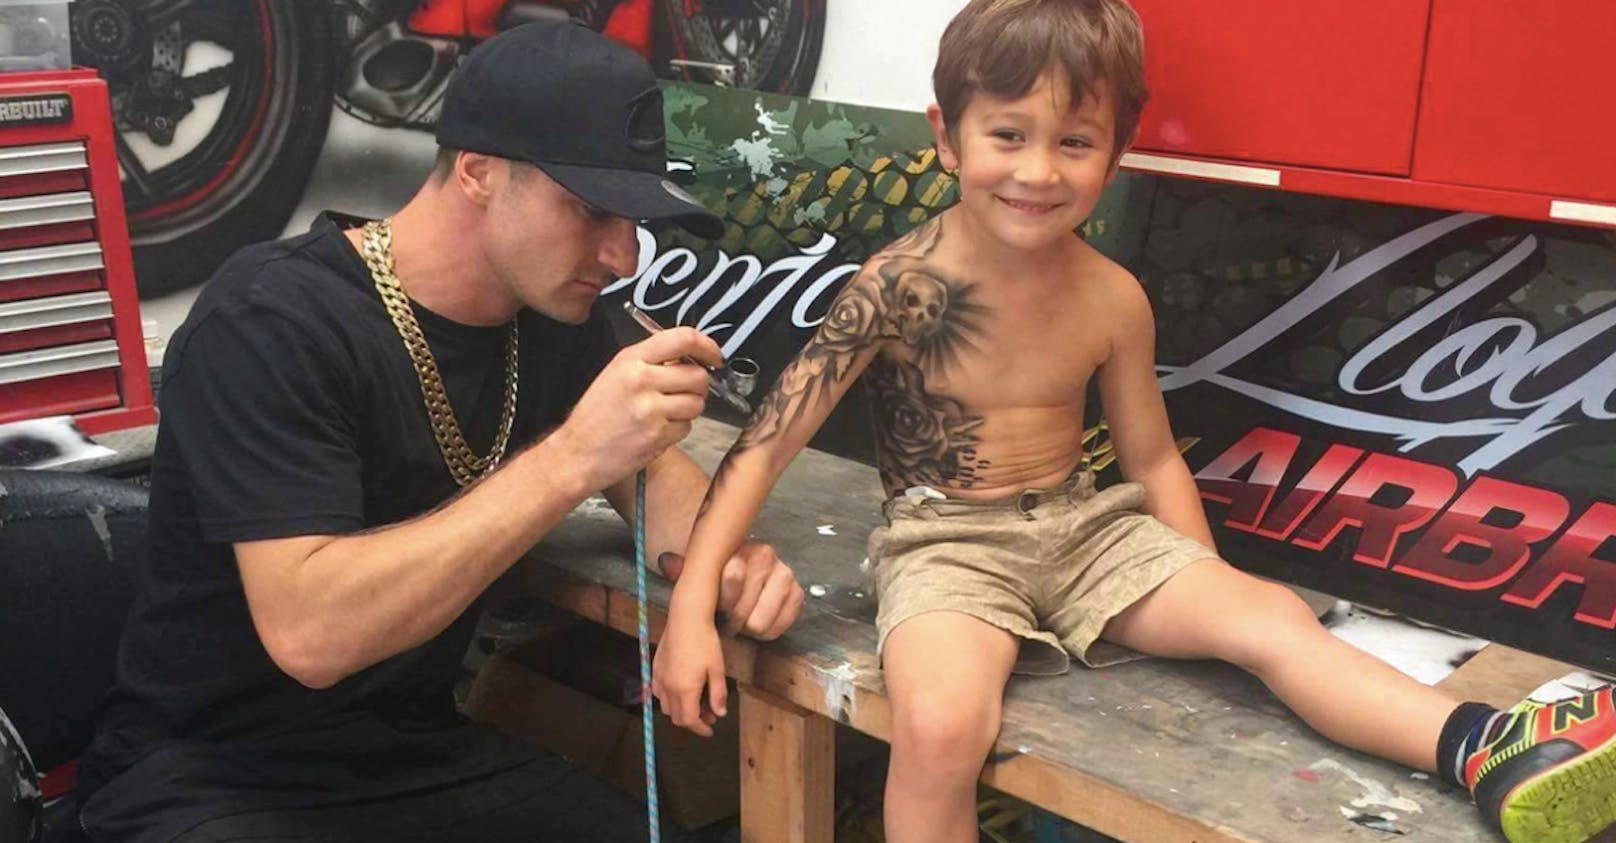 Alles was Benjamin Lloyd mit den Tattoos erreichen will: ein Kinderlächeln.